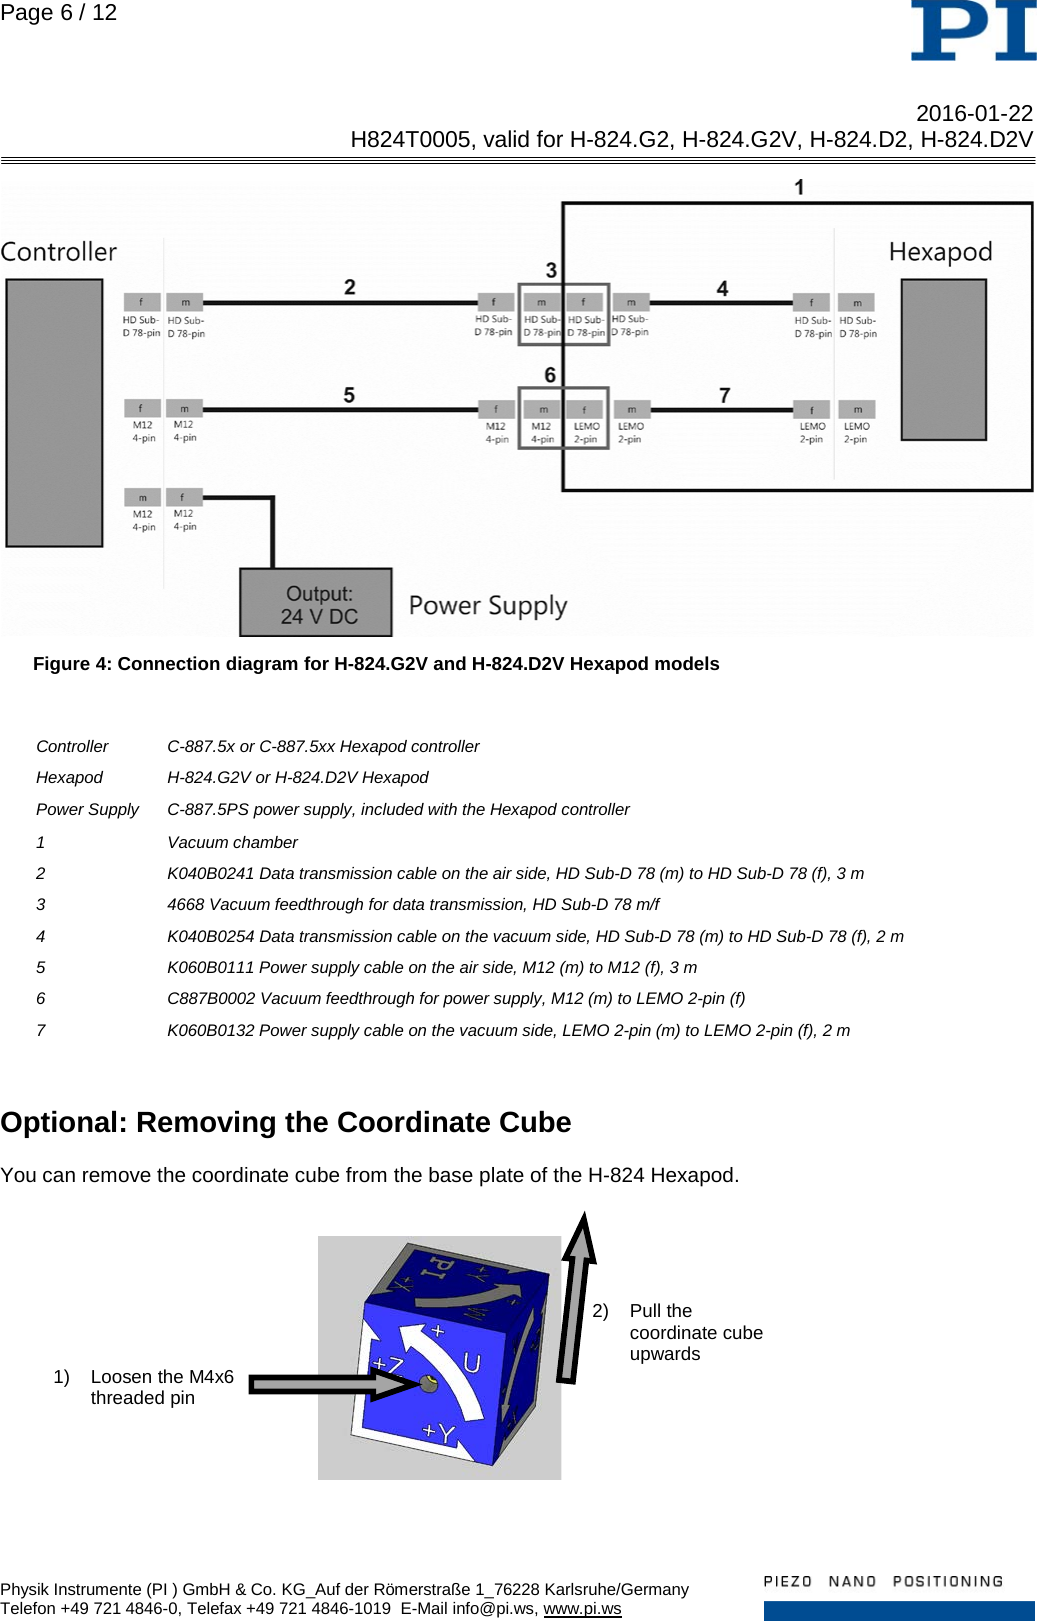 Page 6 of 12 - Physik Instrumente .  H824T0005 TN H-824 D2 G2 D2V G2V